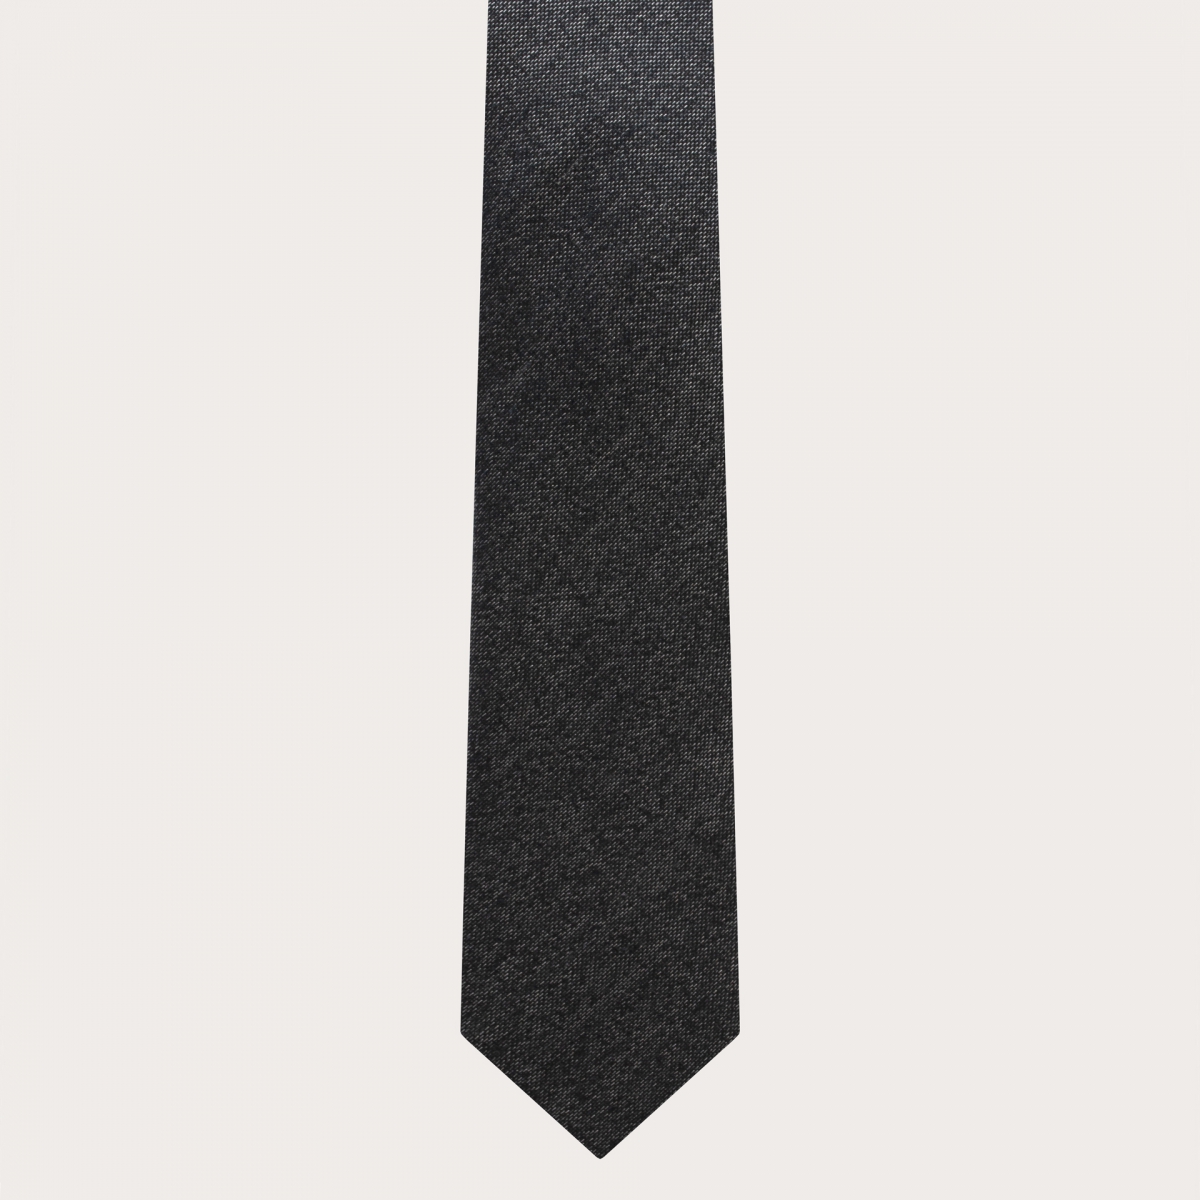 BRUCLE Dünne Hosenträger und Krawatte aus graumelierter Seide